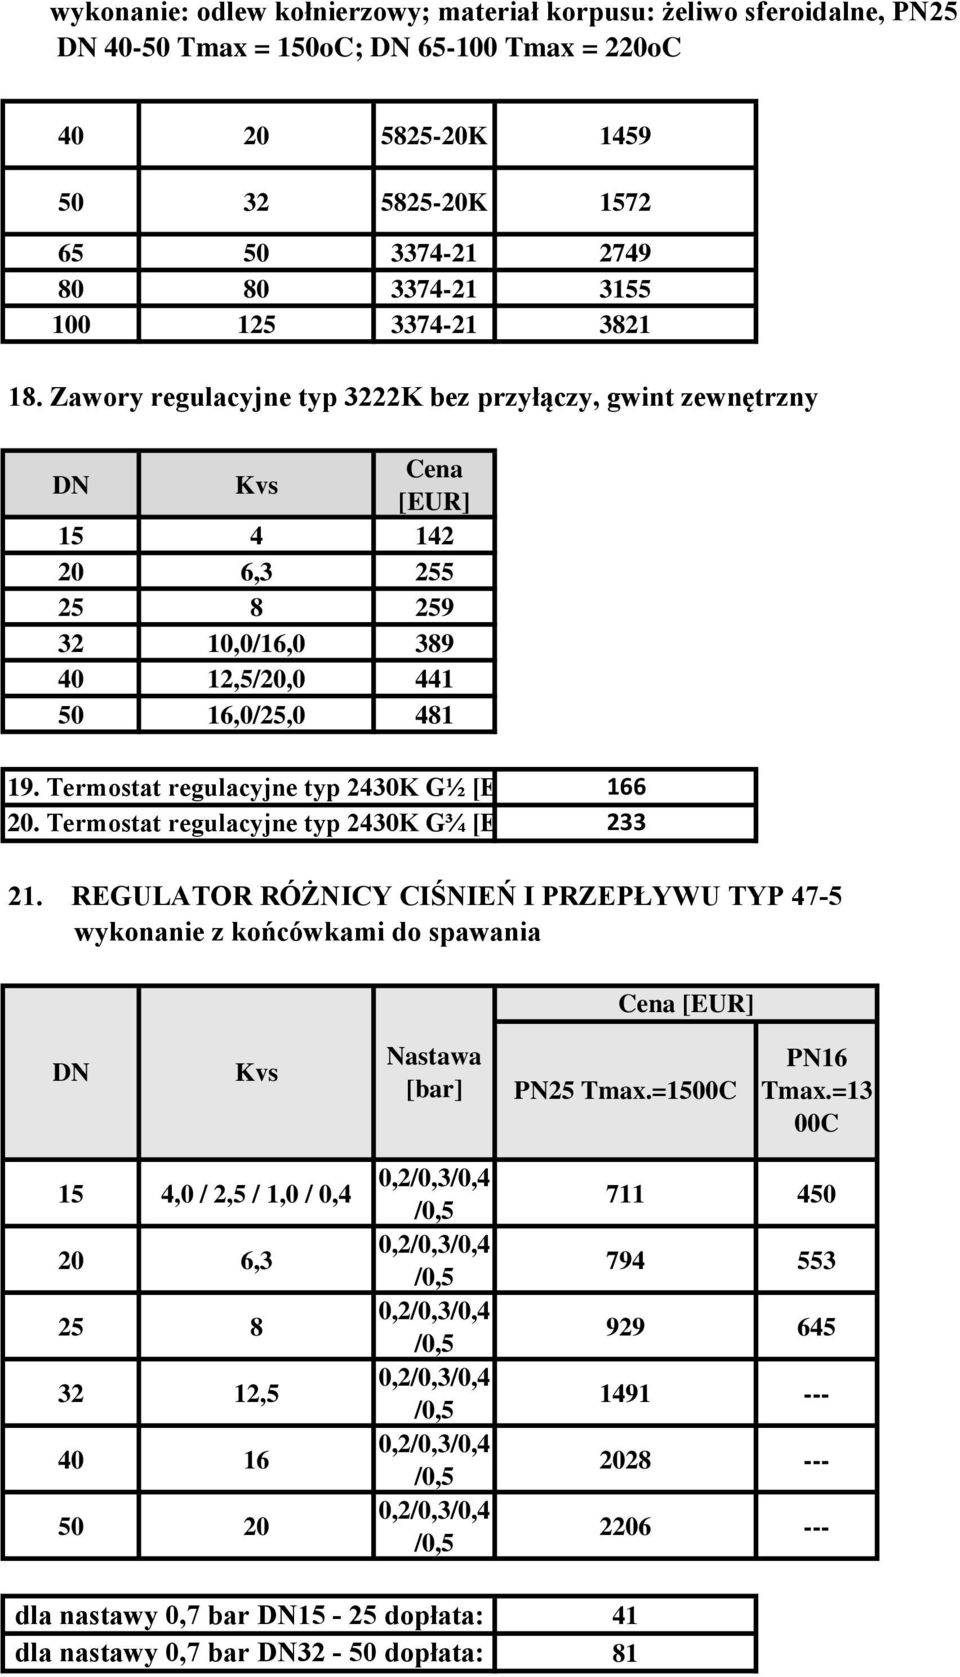 Termostat regulacyjne typ 430K G¾ 166 33 1. REGULATOR RÓŻNICY CIŚNIEŃ I PRZEPŁYWU TYP 47-5 wykonanie z końcówkami do spawania Nastawa PN5 Tmax.=1500C PN16 Tmax.